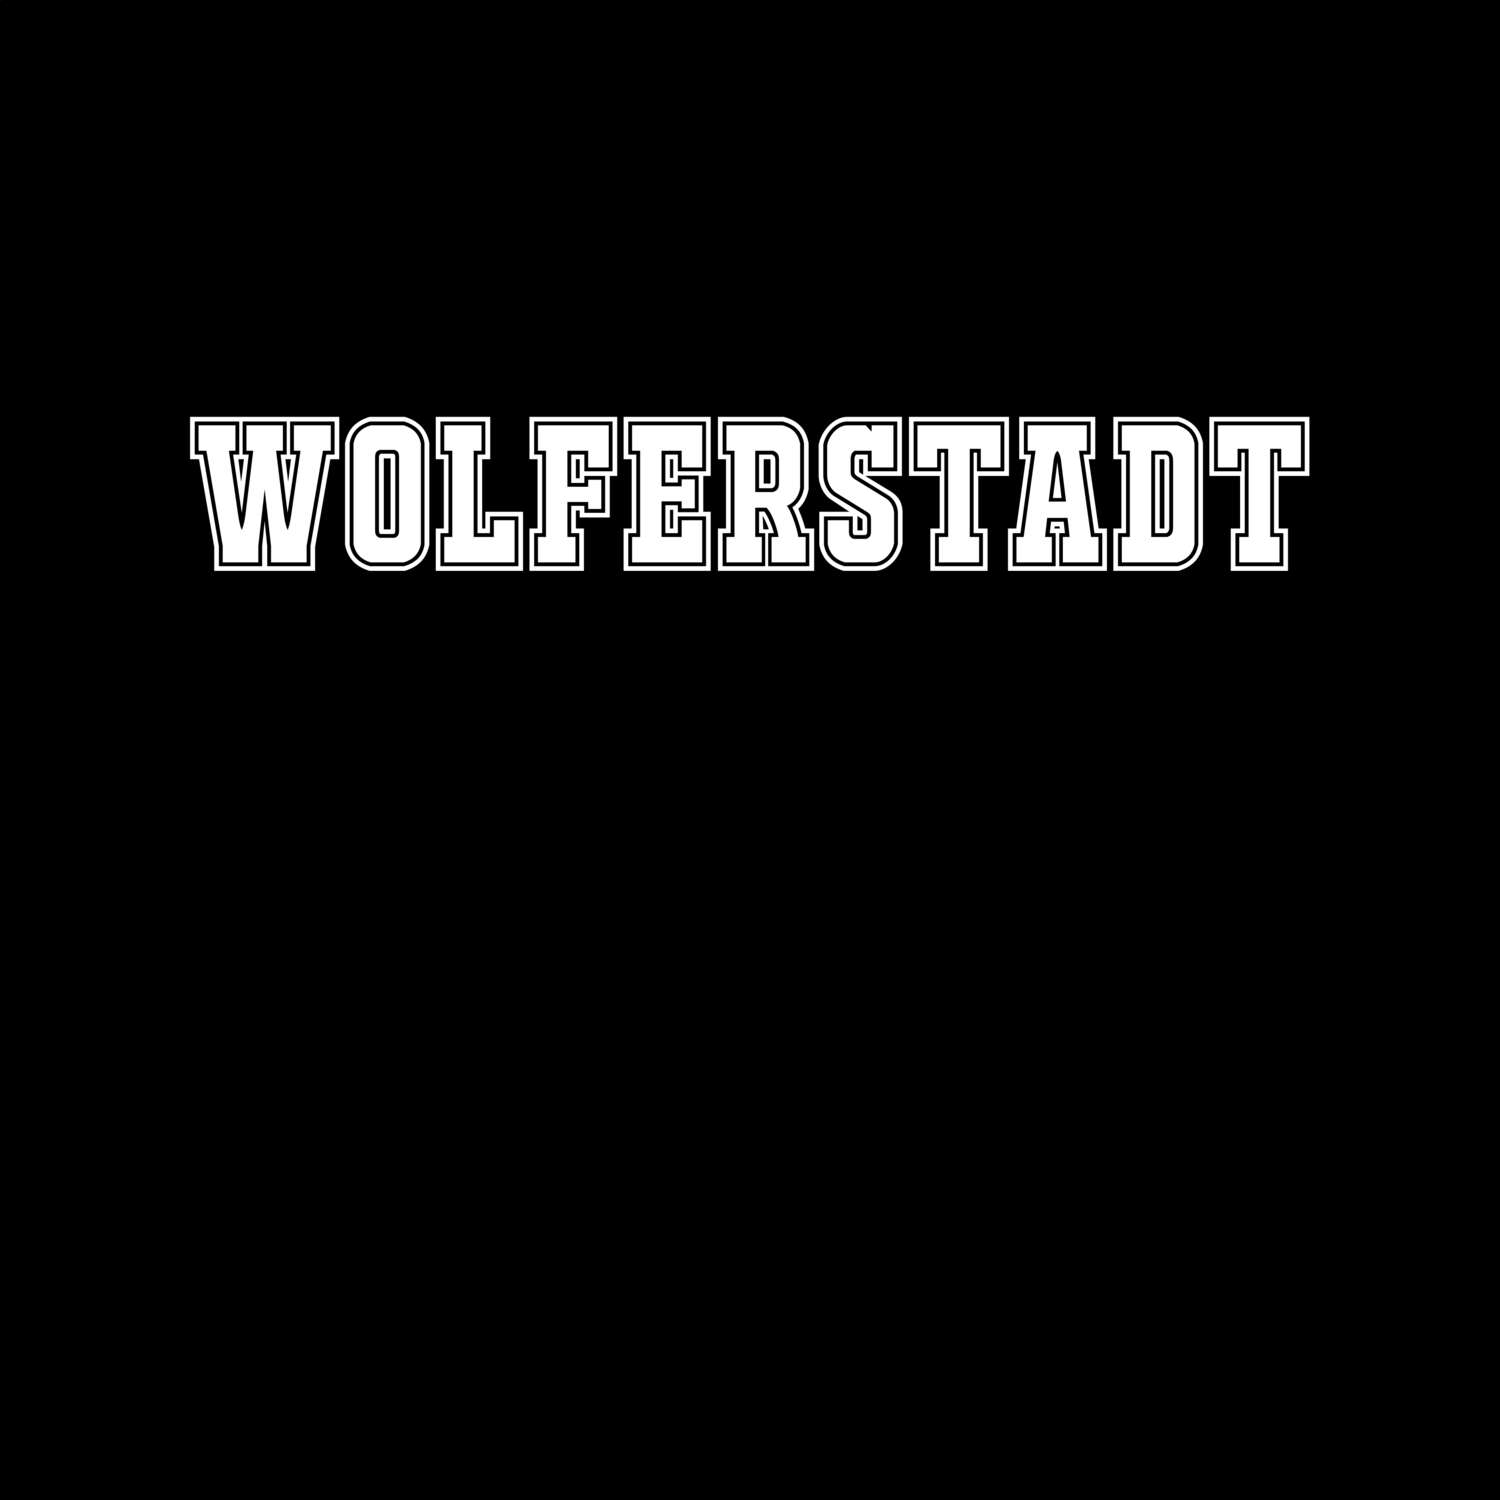 Wolferstadt T-Shirt »Classic«